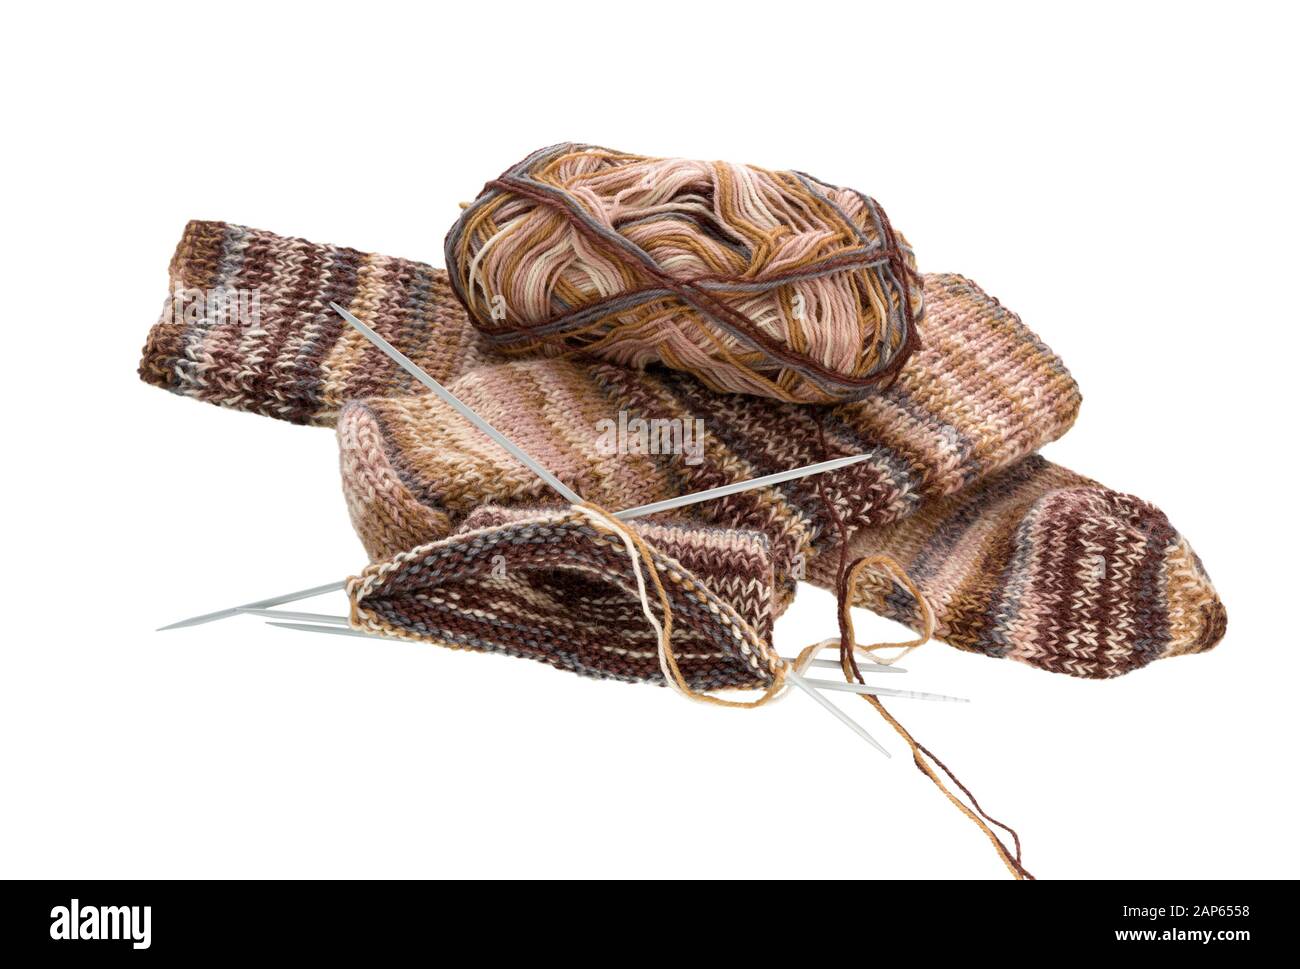 Chaussettes à tricoter et aiguille à tricoter isolées sur fond blanc. Chaussettes hiver laine chaude tricot. Chaussettes En laine Colorées tricotées. Banque D'Images